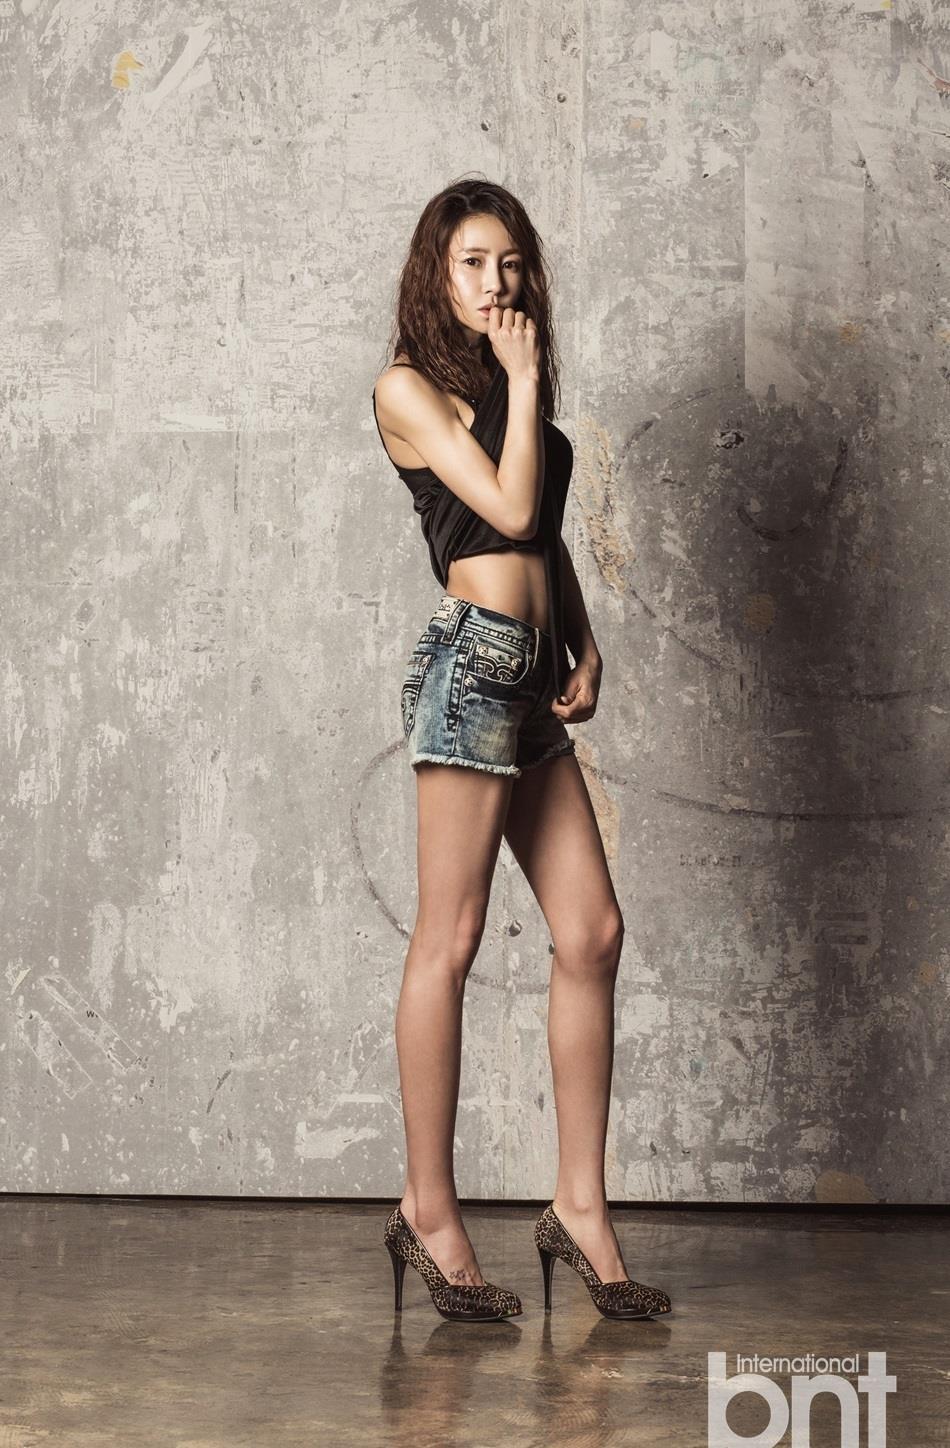 韩女星蔡敏瑞拍写真 秀傲人双峰长腿,韩女星蔡敏瑞拍写真 秀傲人双峰长腿